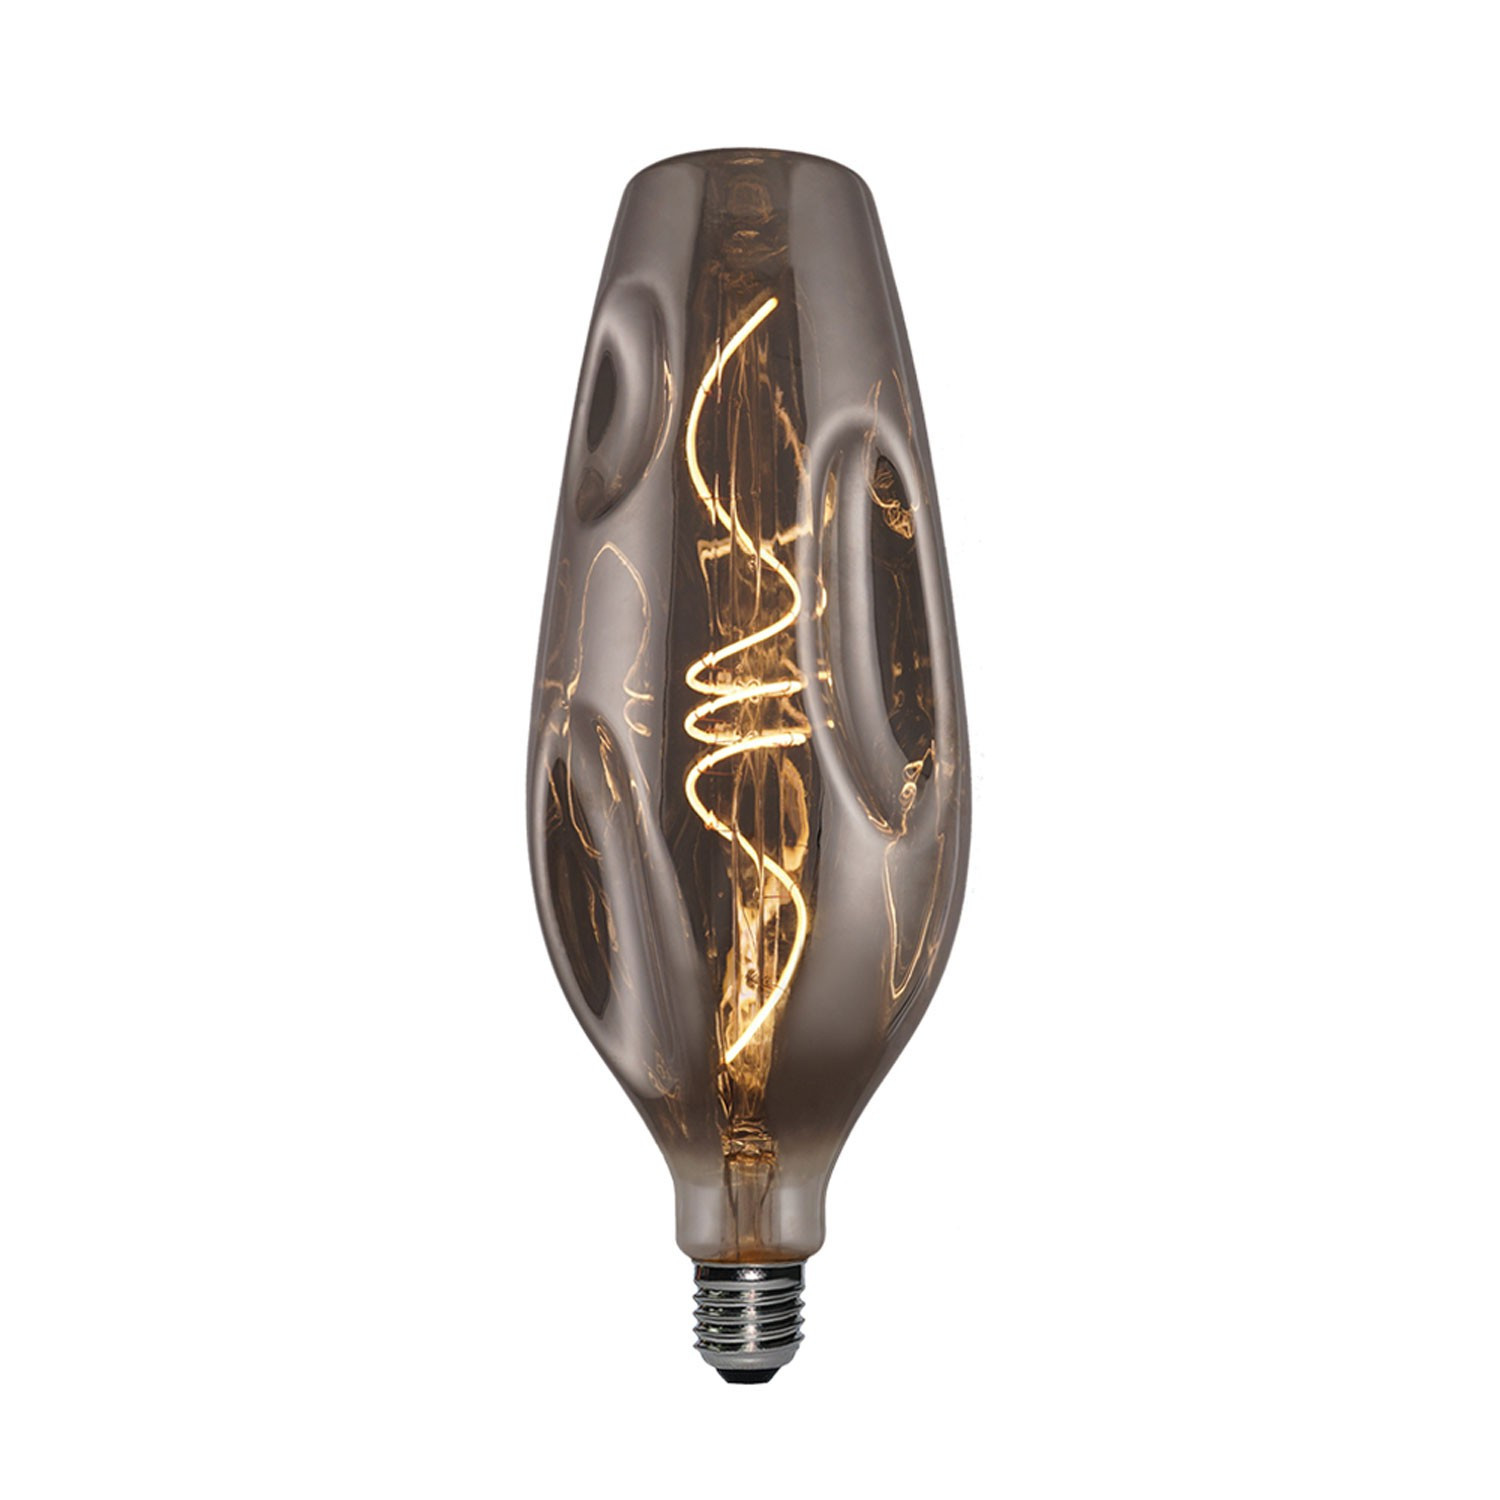 Lampadina LED Smoky Bumped bottiglia filamento a Spirale 5W 100Lm E27 1800K Dimmerabile